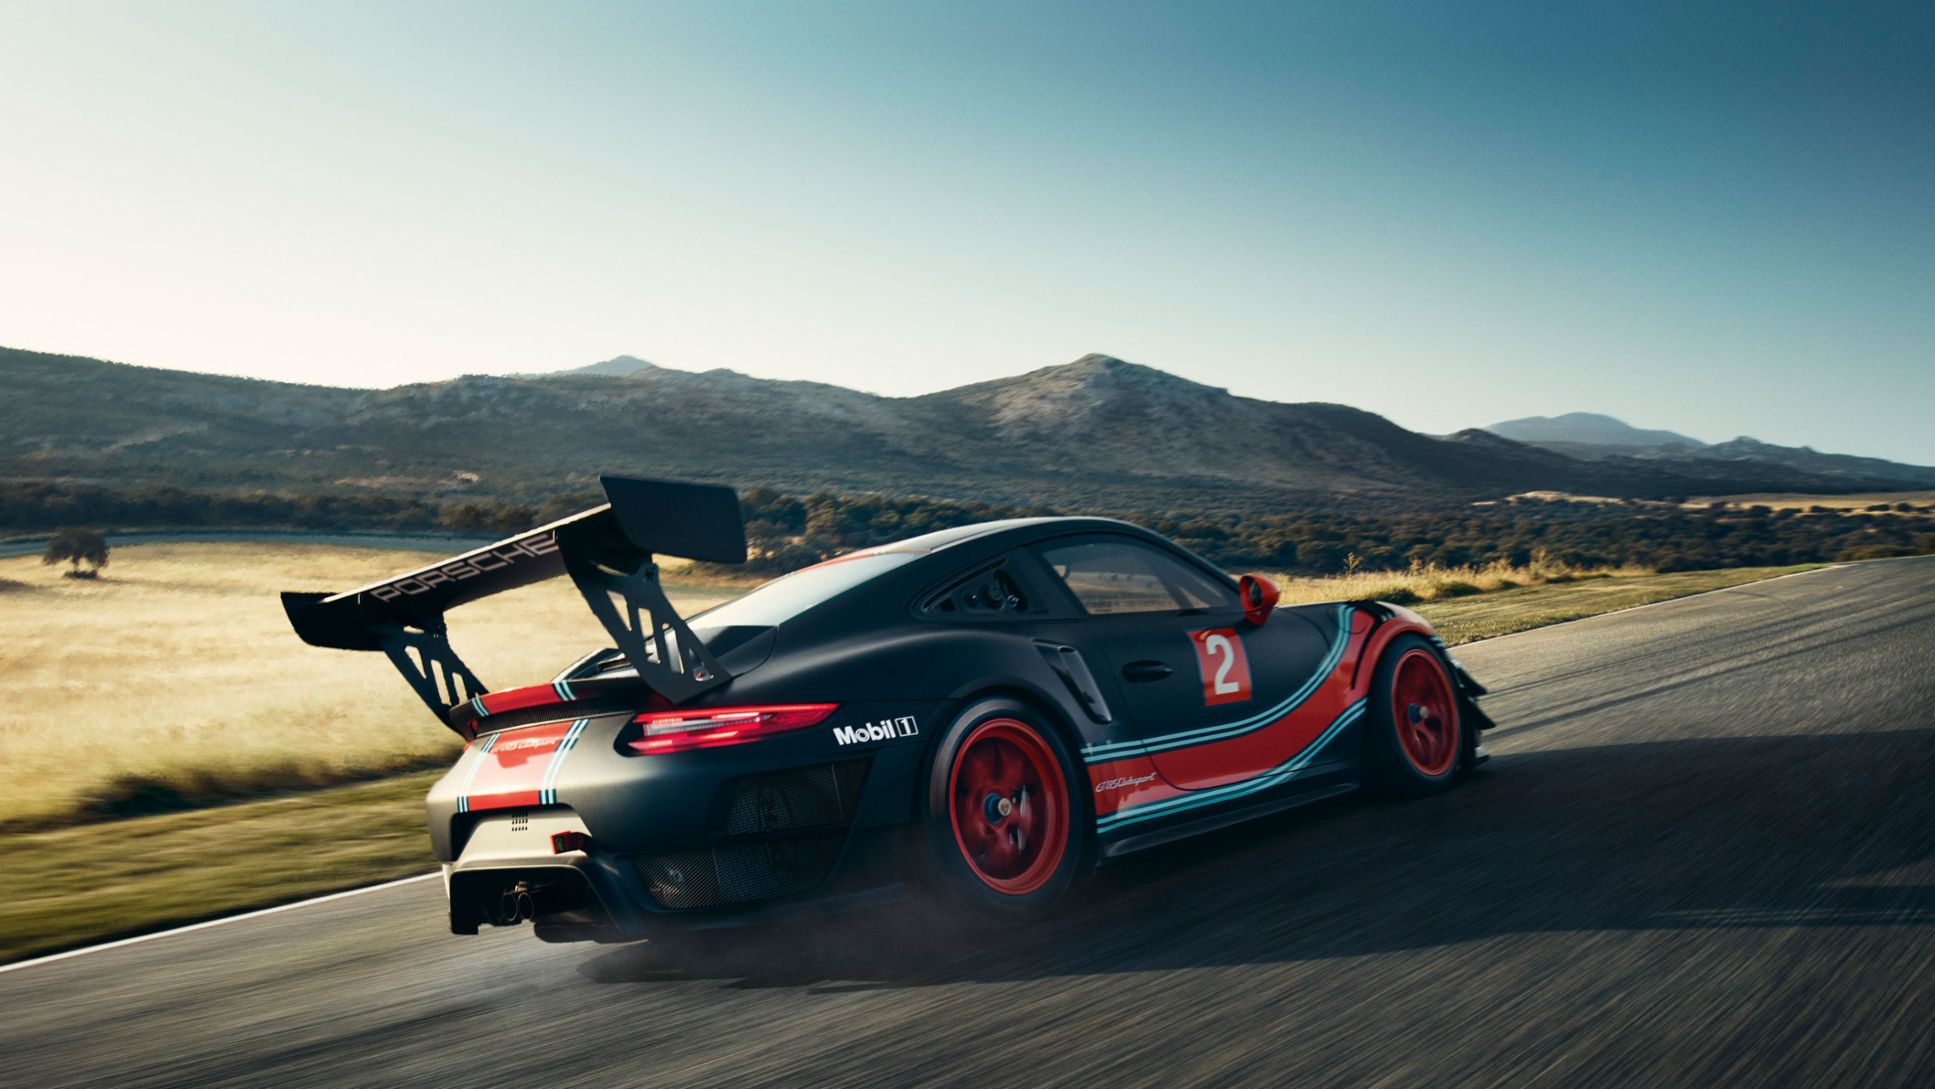 Porsche 911 GT2 RS Clubsport with 700 hp - Porsche Newsroom